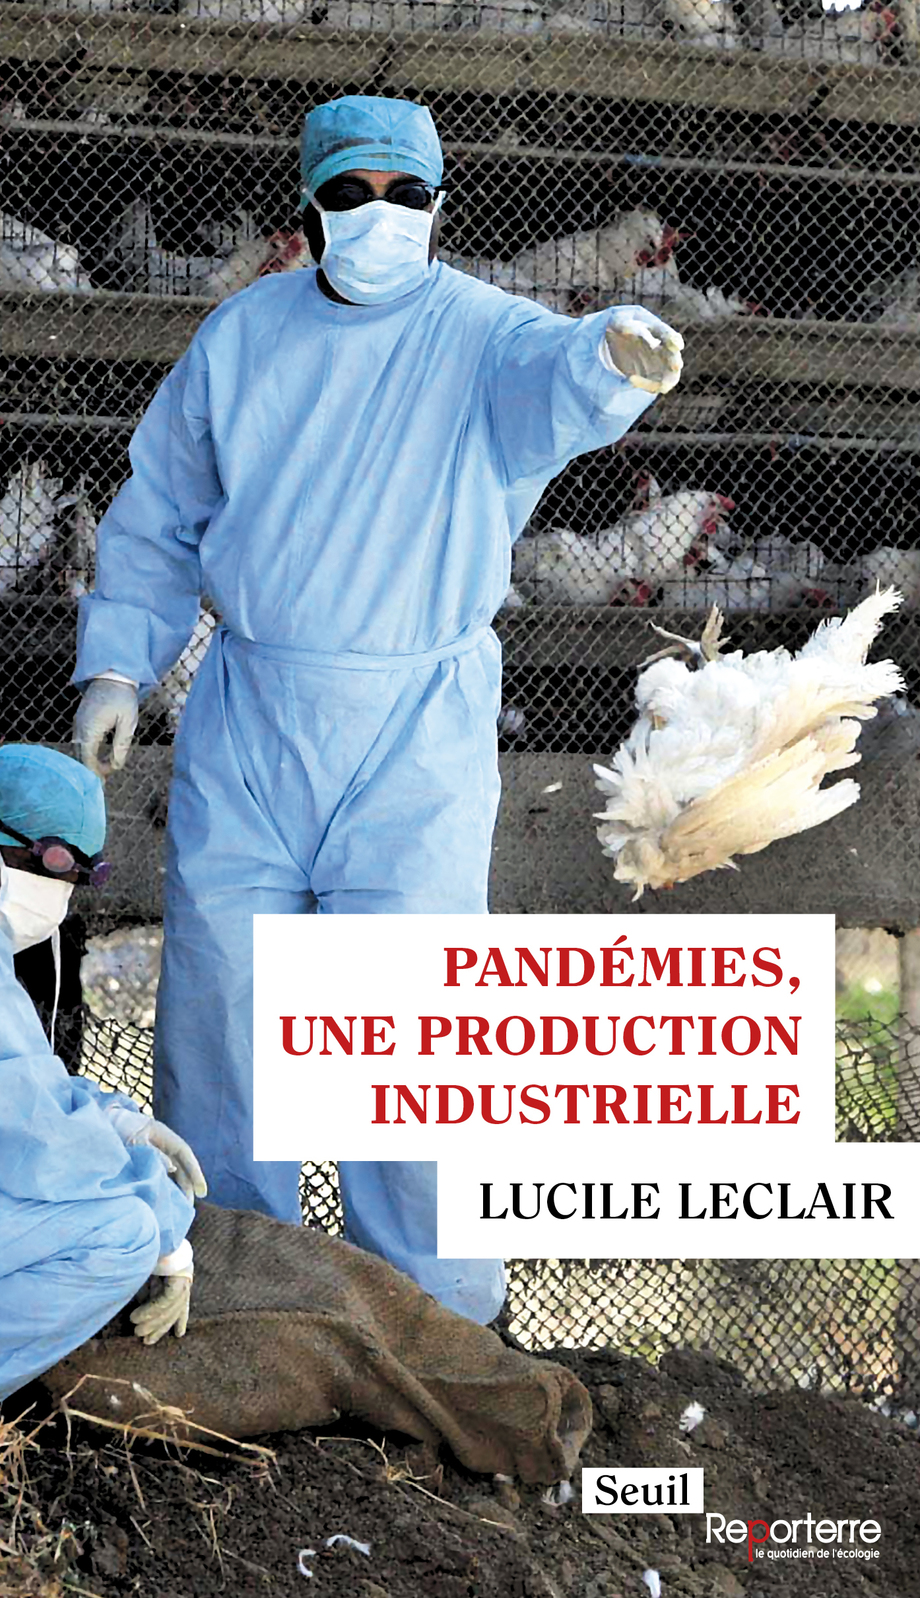 Image Pandémies, une production industrielle